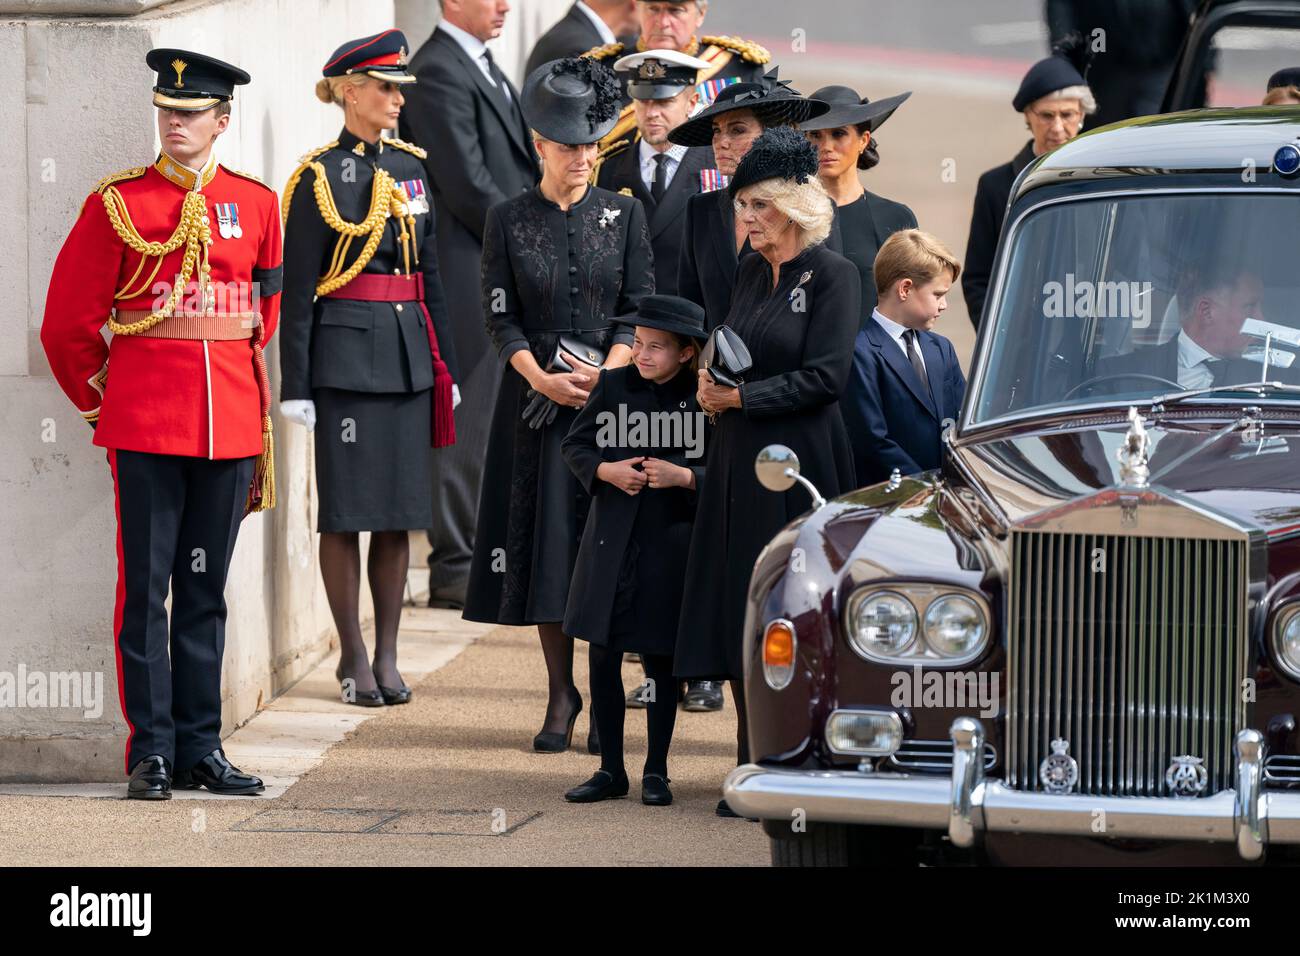 La contessa di Wessex, la principessa Charlotte, la principessa di Galles, la regina Consort, la duchessa di Sussex e il principe Giorgio come la carrozza di stato che porta la bara della regina Elisabetta II arriva a Wellington Arch durante il processo cerimoniale dopo il suo funerale di Stato all'Abbazia di Westminster, Londra. Foto Stock